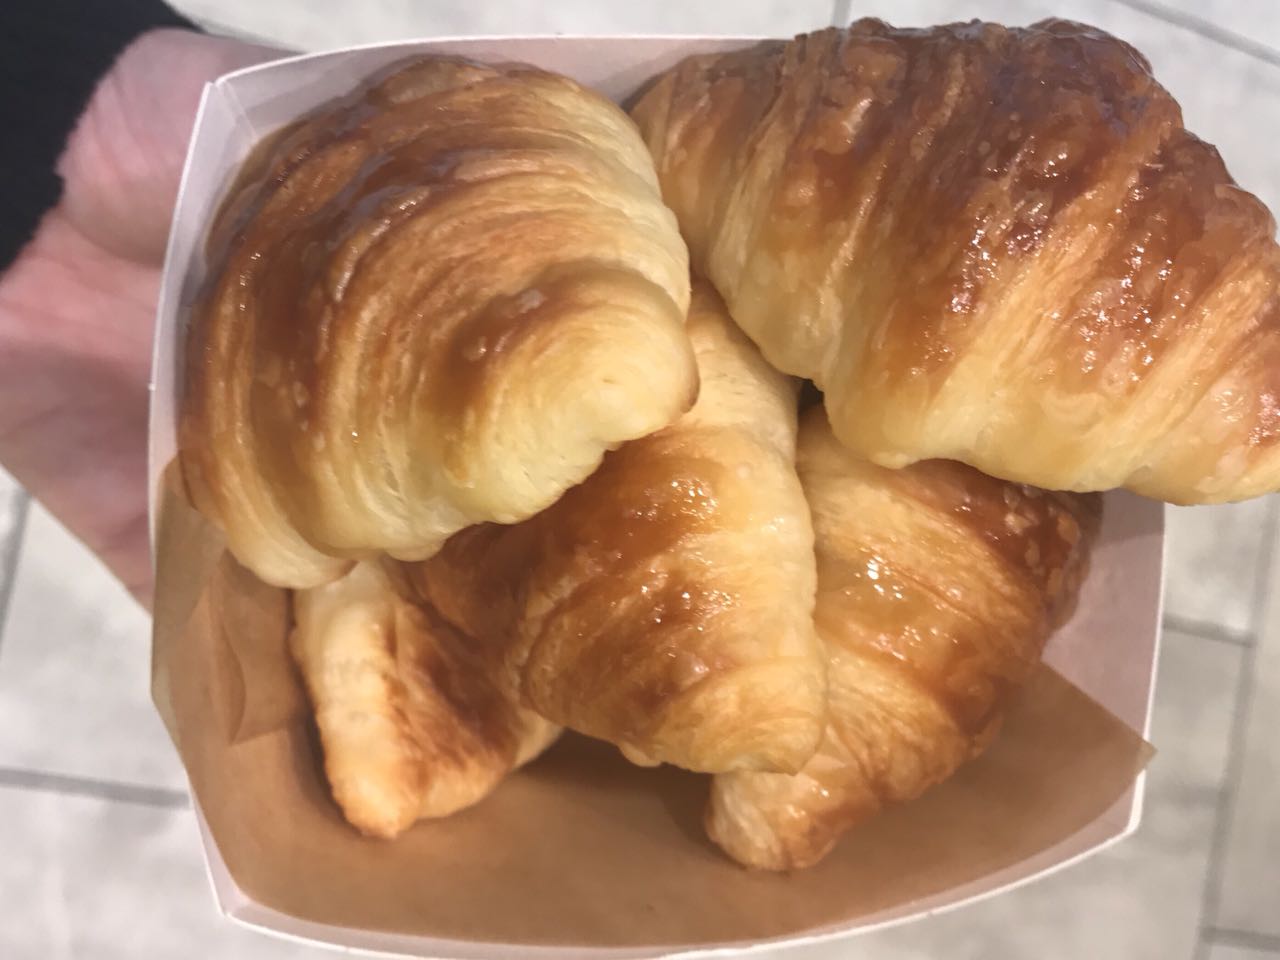 Croissants da Paris Baguette em NYC - Giuli Castro